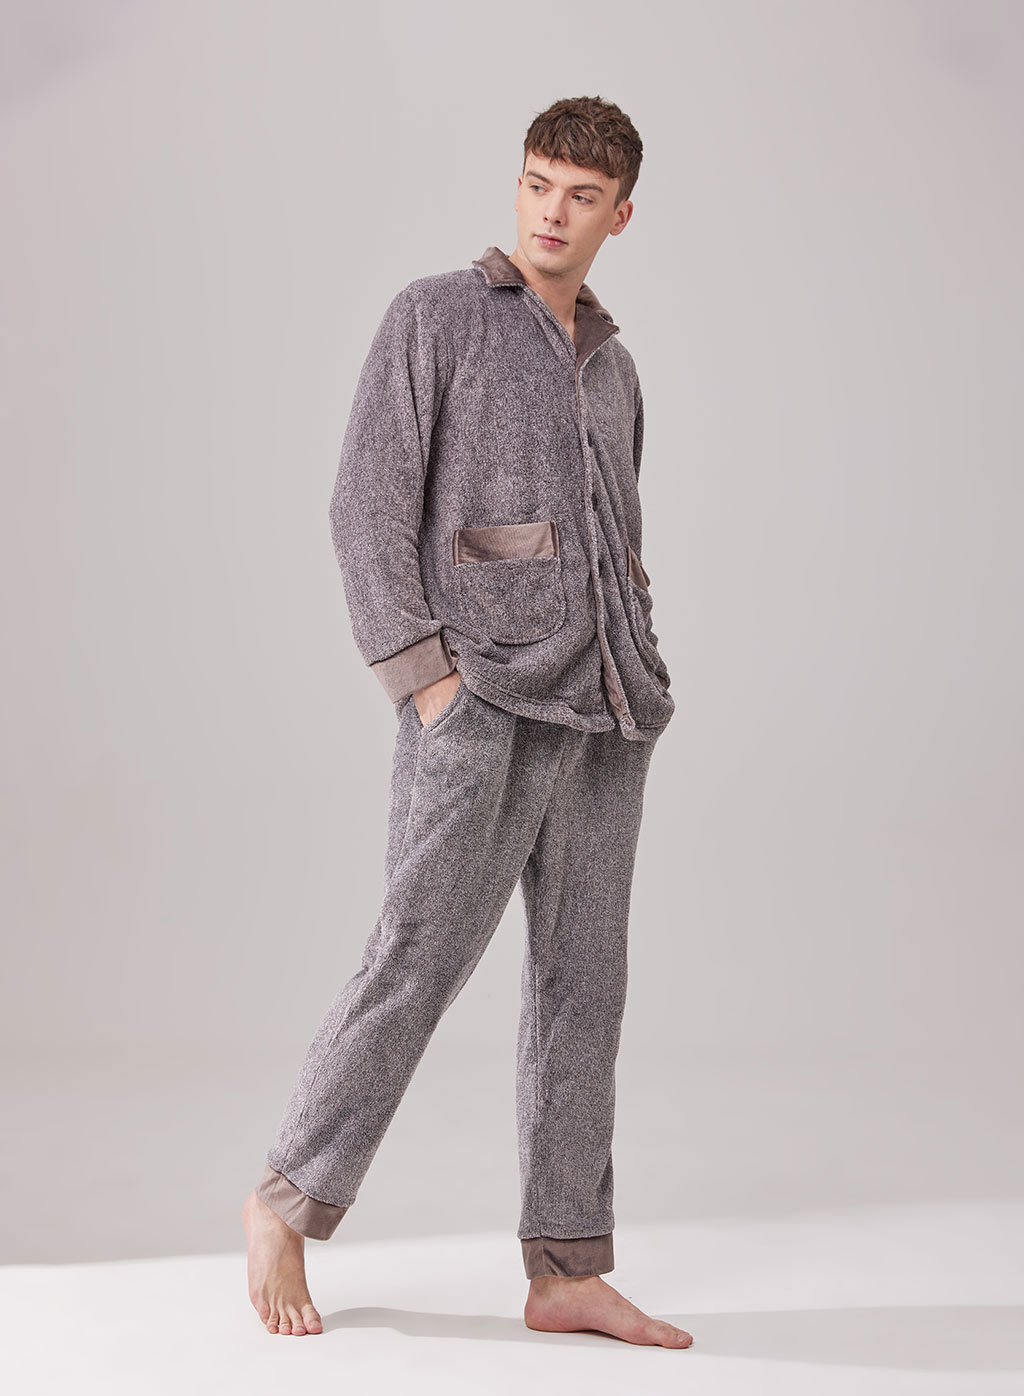 Men's Sleepwear, Pajamas, Robes & Nightgowns | Nap Loungewear